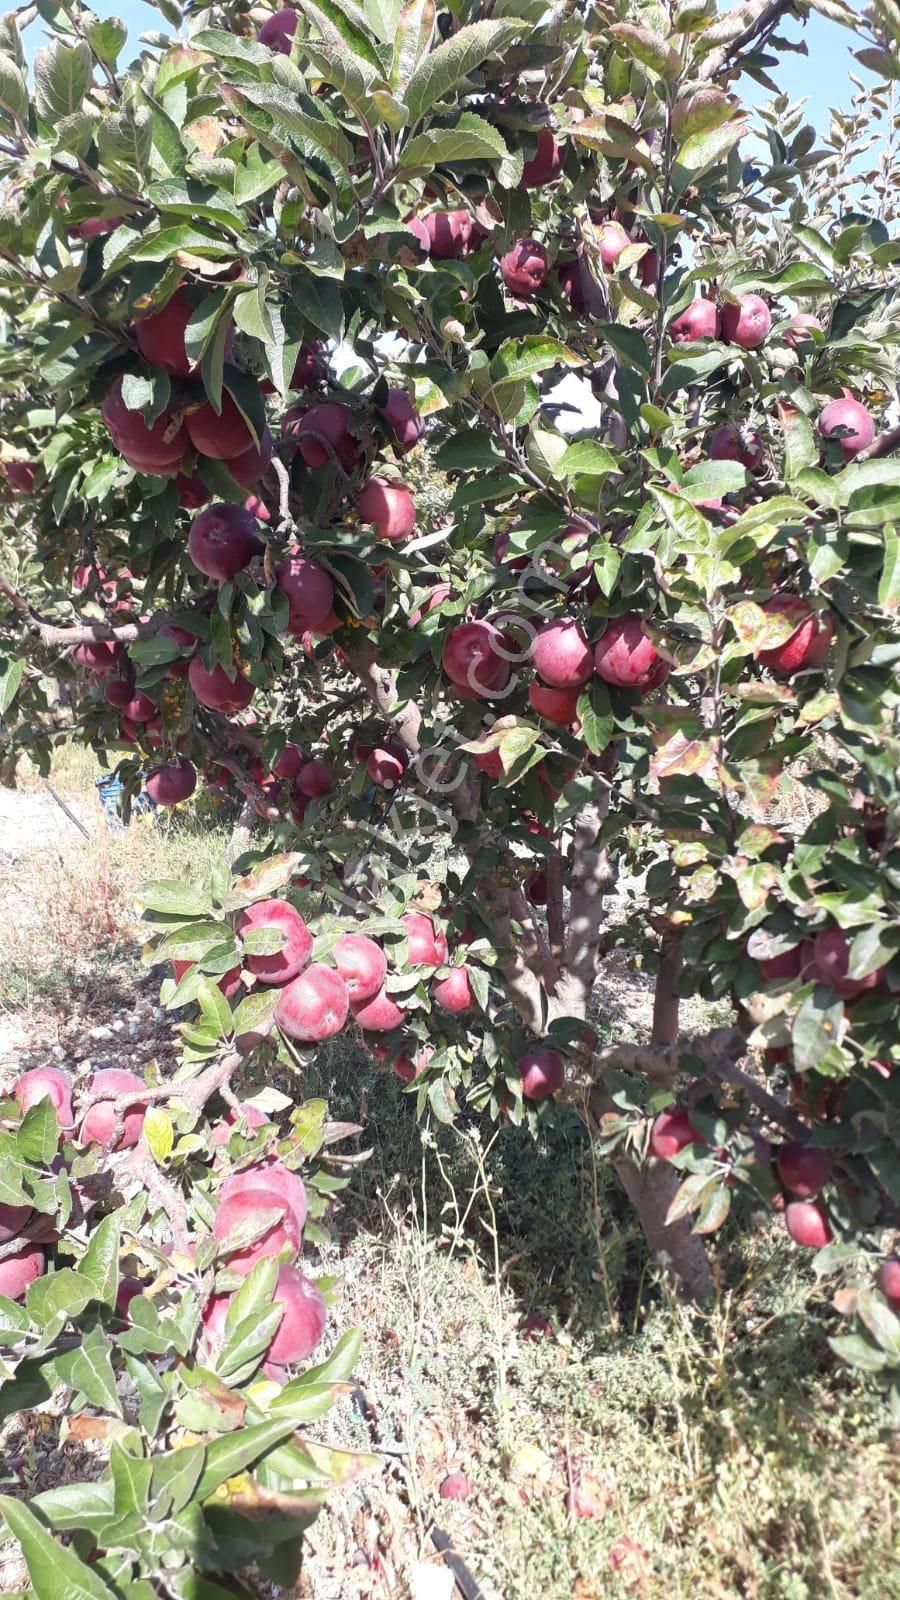 Çameli Yunuspınarı Satılık Tarla Çameli merkezde satılık 5.500m2 müstakil bakımlı elma bahçesi